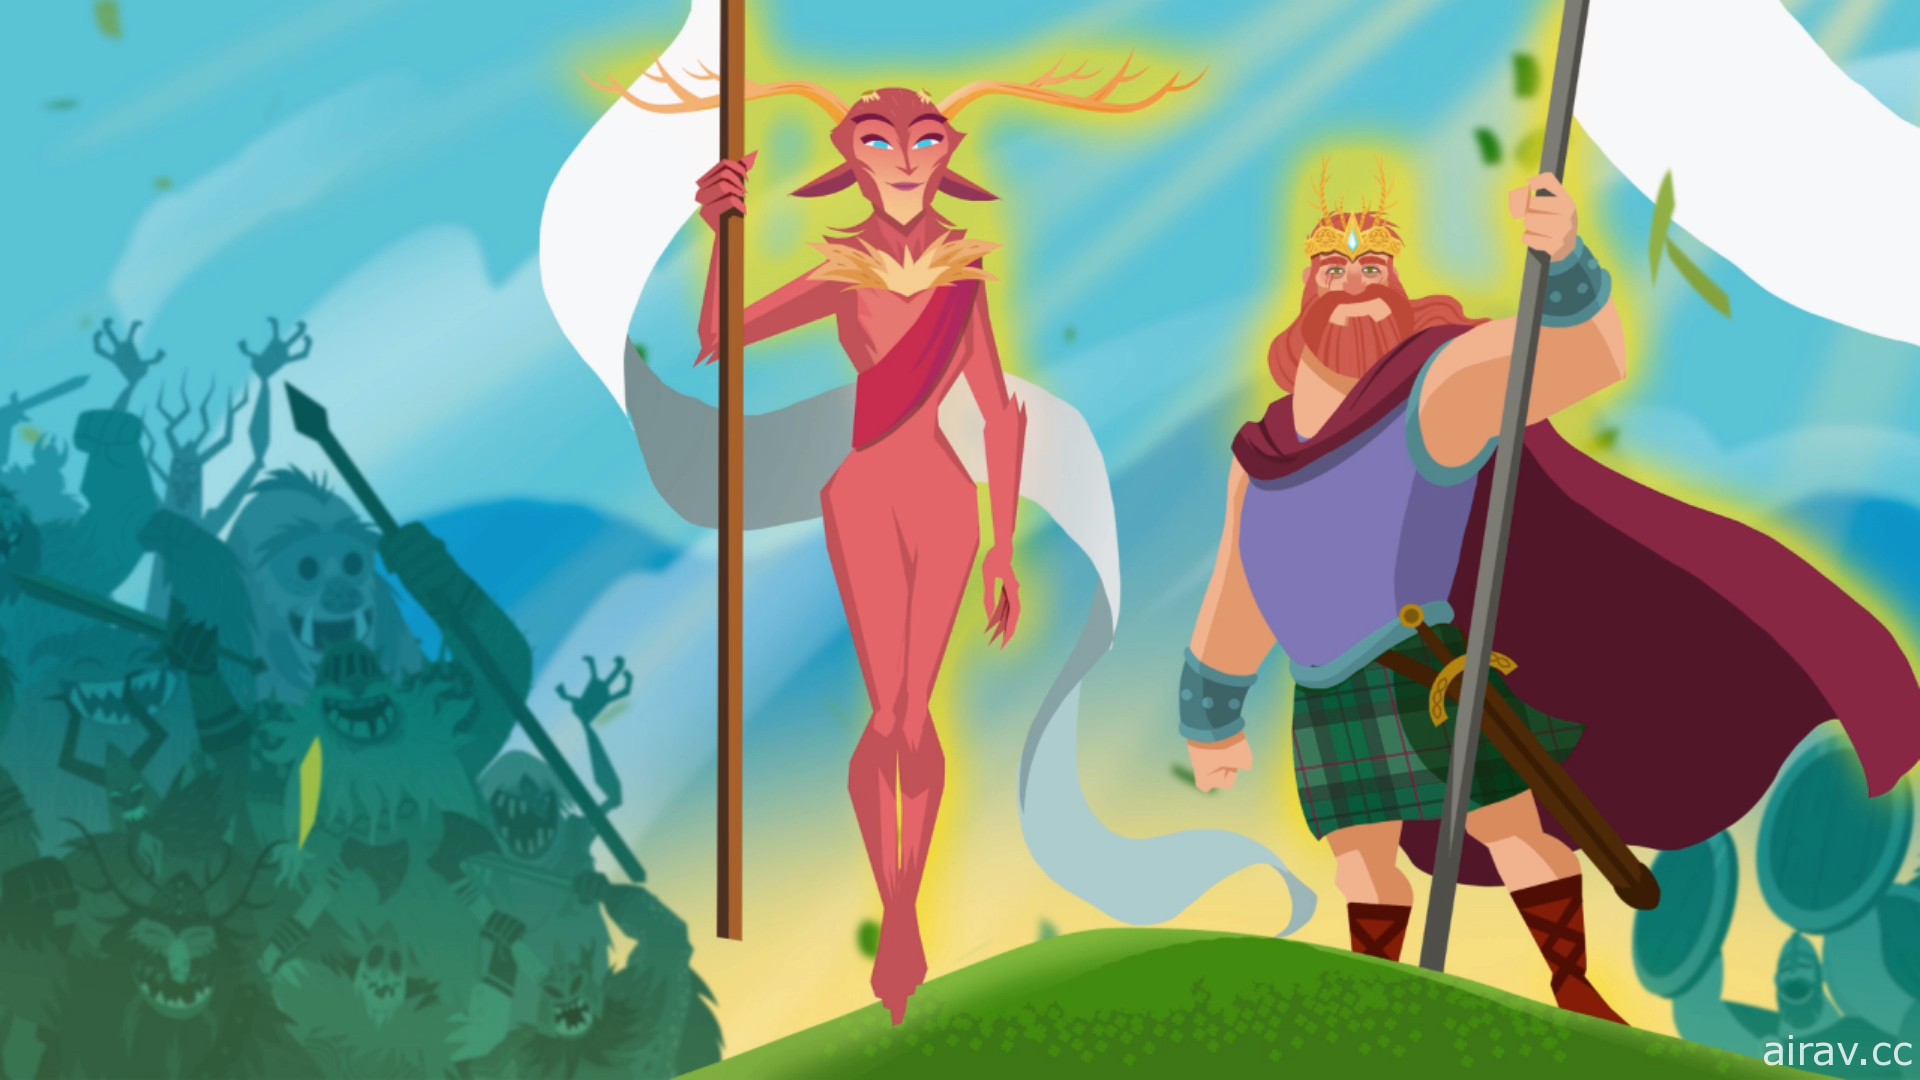 凱爾特神話題材 2D 動作遊戲《奧柯奈爾部族與斯塔格的王冠》Switch 中文版今日上市